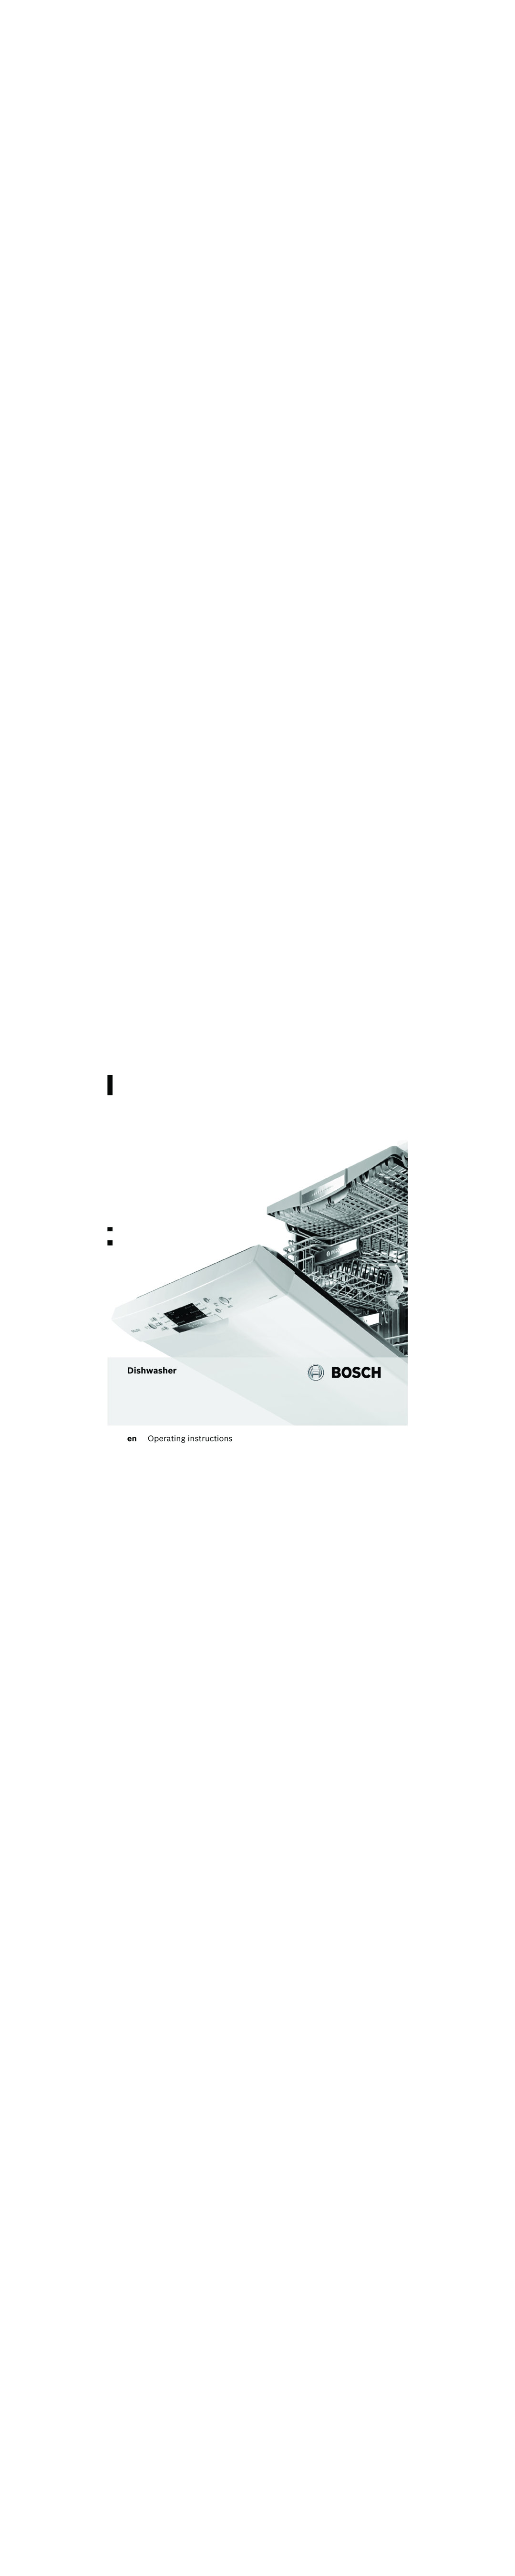 Bosch Appliances 5HVHW, 6WDUW manual Jt Xbt Fs, F0QFSBUJOHJOTUSVDUJPOT 